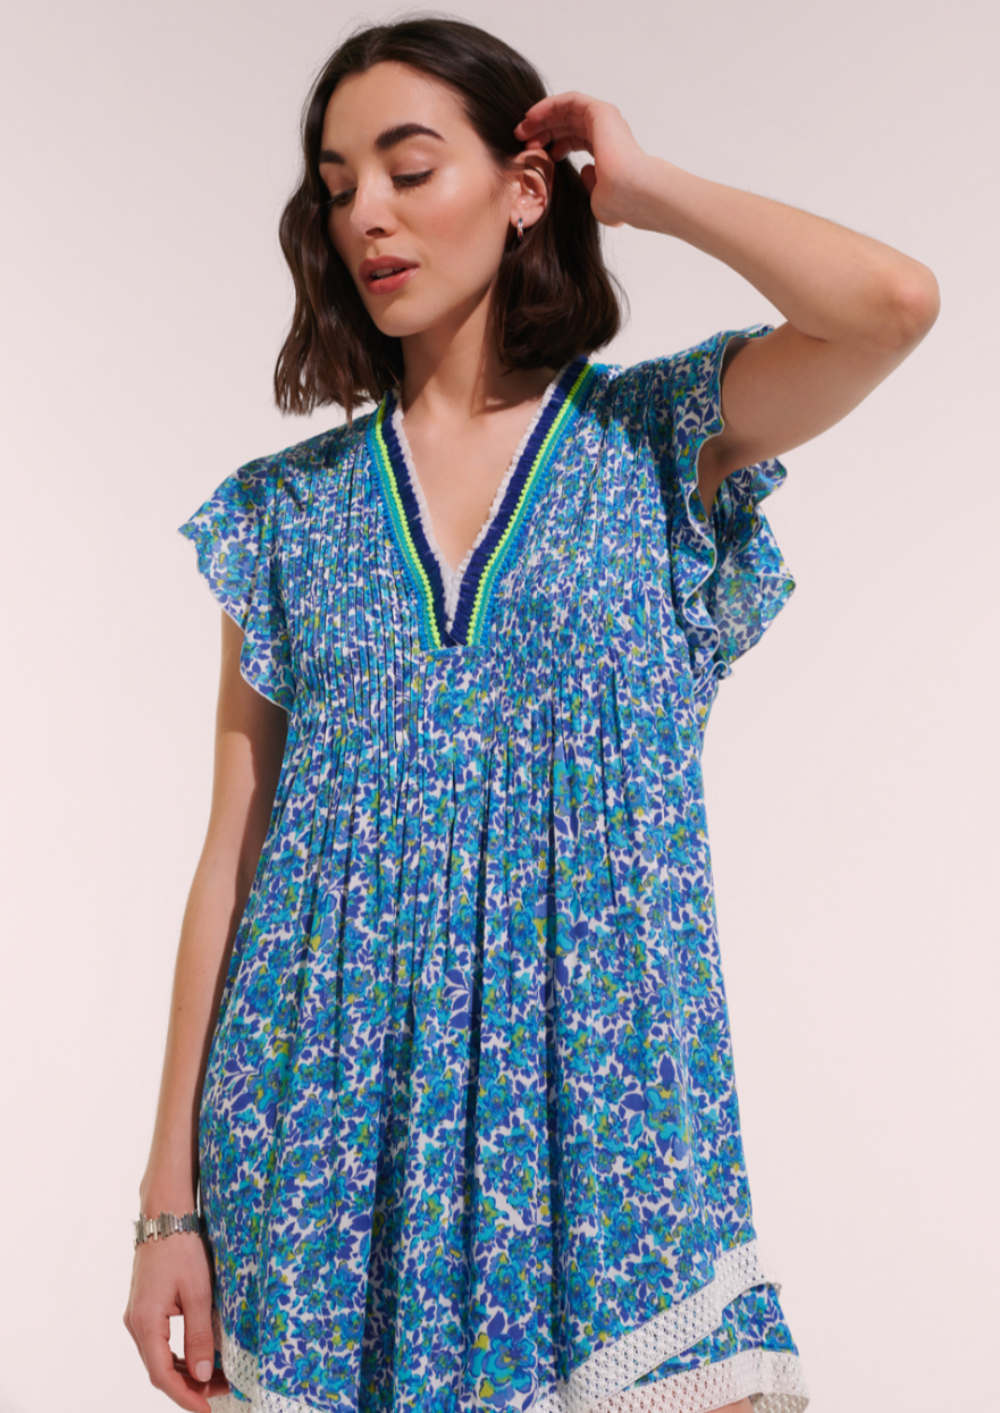 Poupette St Barths Mini Dress Sasha Lace Trimmed |Blue Net